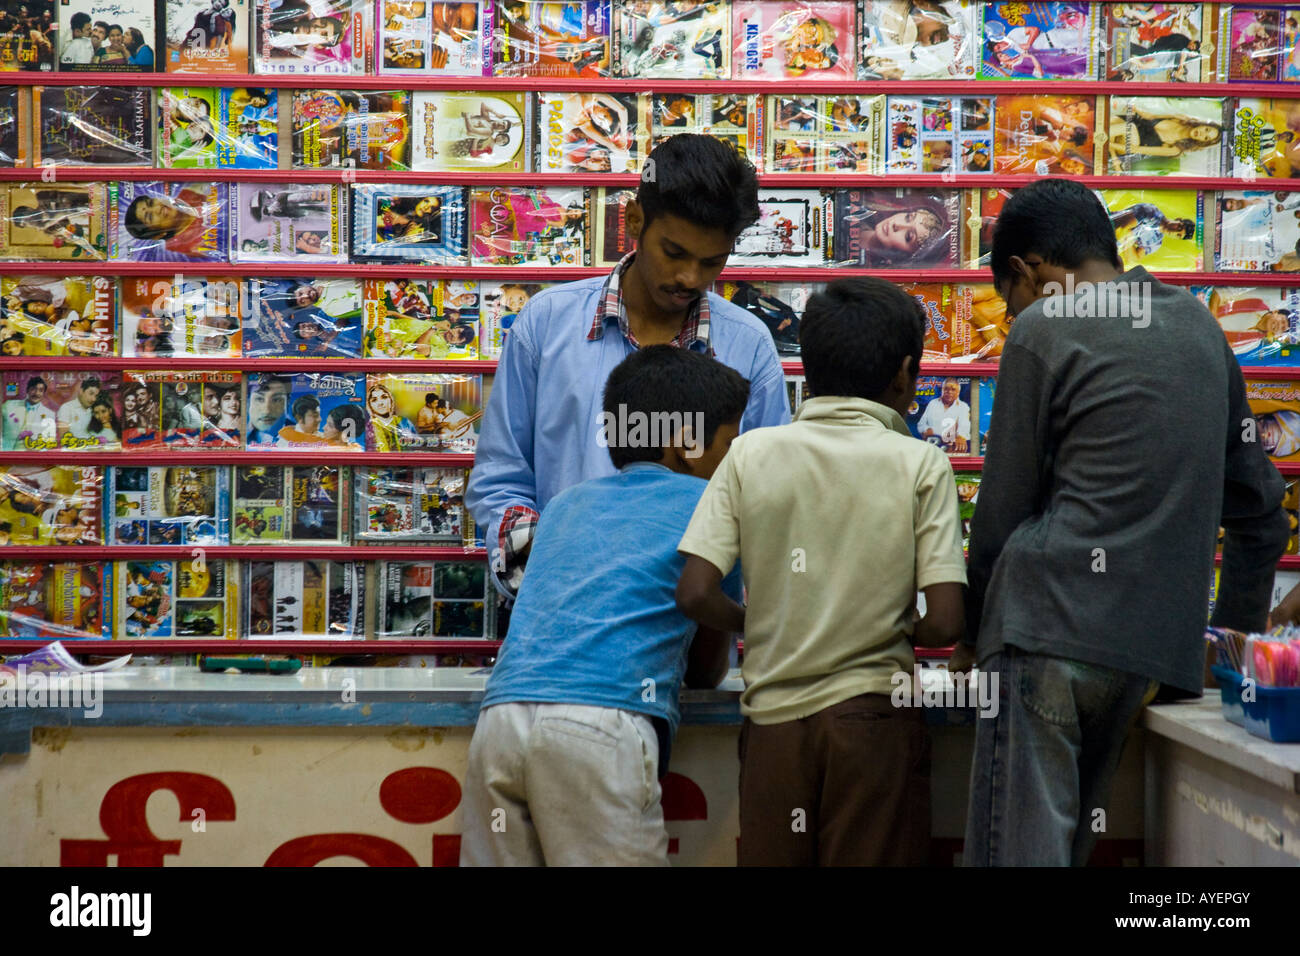 Les garçons Shopping pour les films DVD et de la musique dans un magasin à Mumbai Inde du Sud Banque D'Images